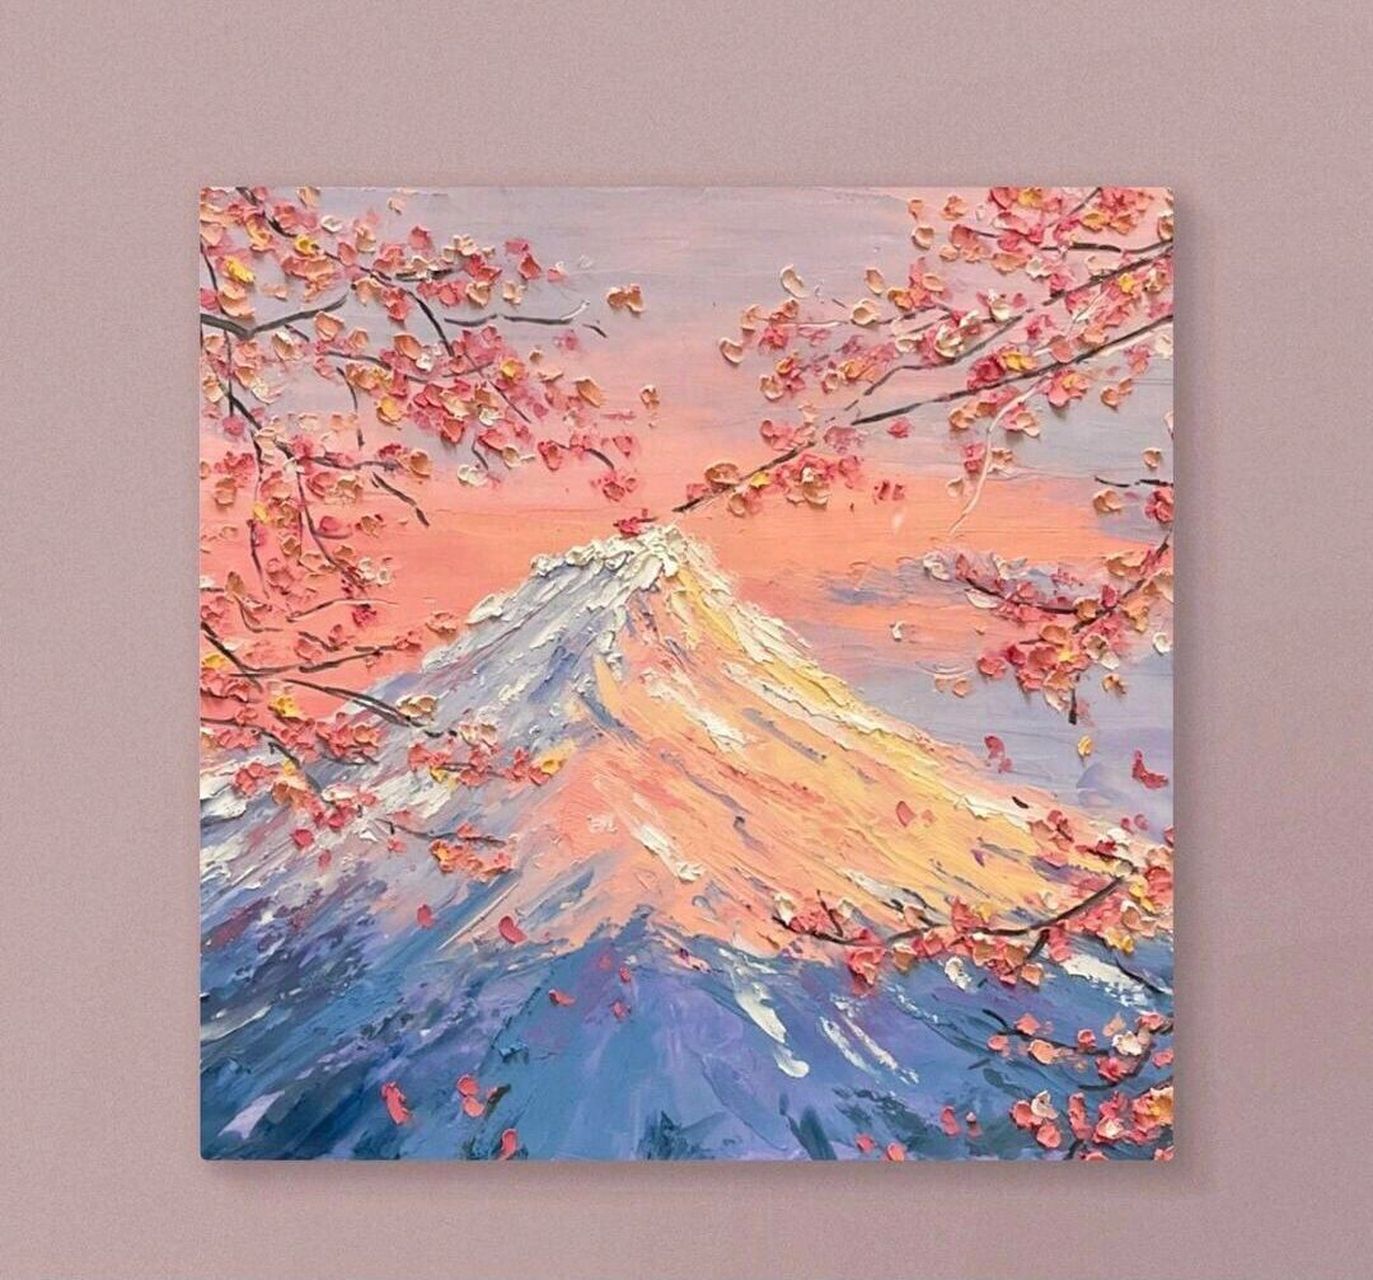 油画棒风景作品樱花富士山附色号步骤油画棒 好久都木有更新了呢,更个